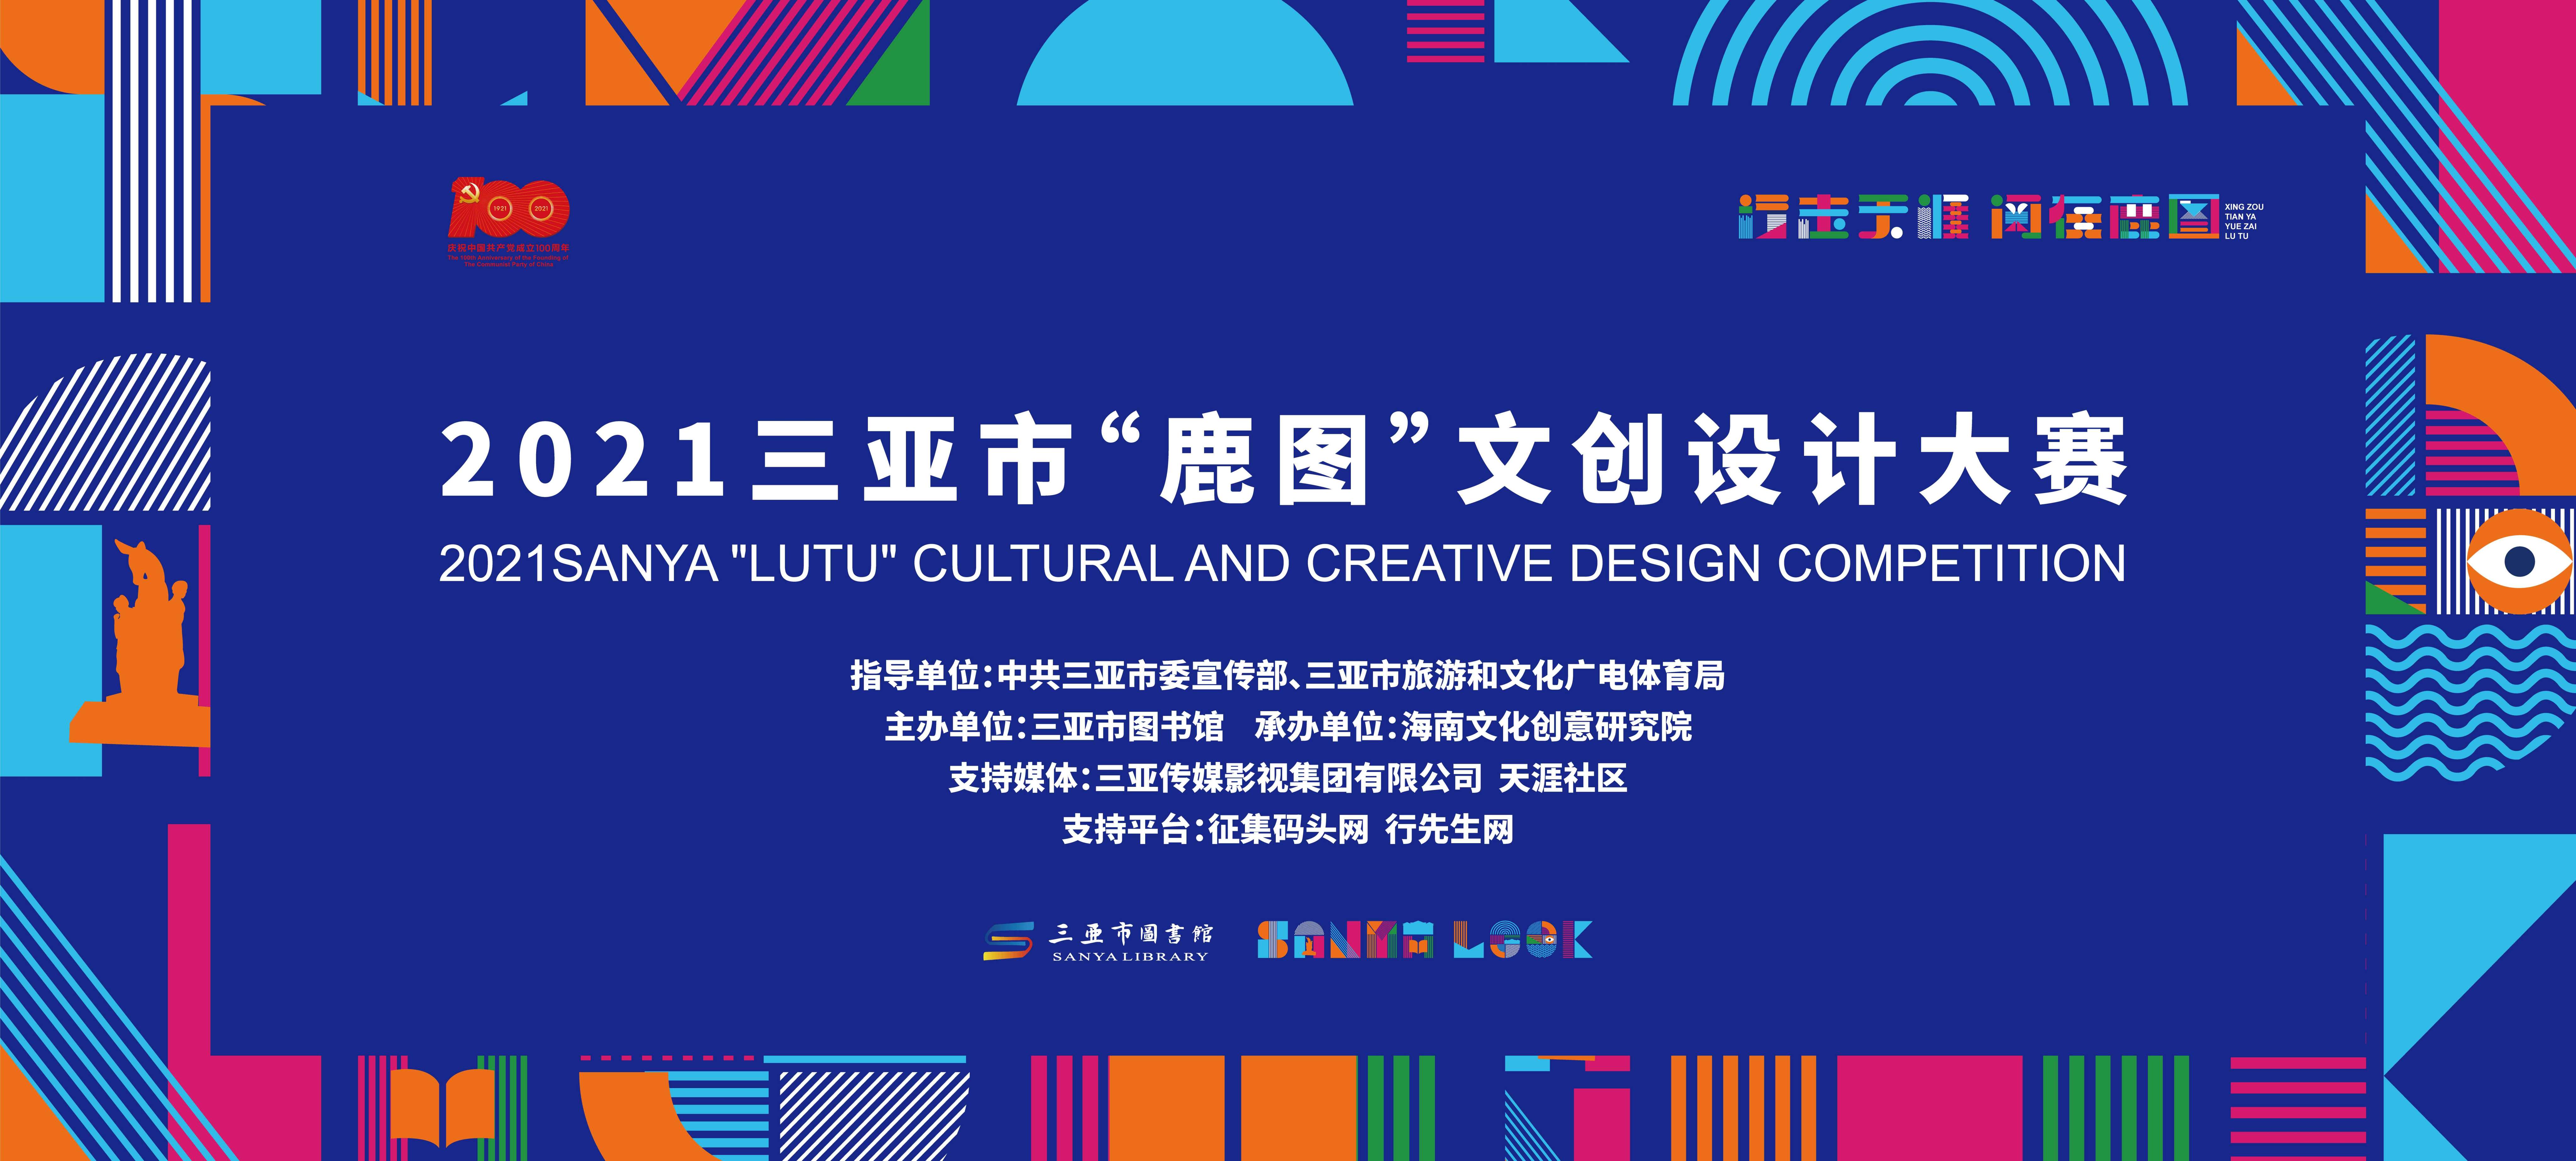 2021三亚市“鹿图”文创设计大赛获奖作品公示